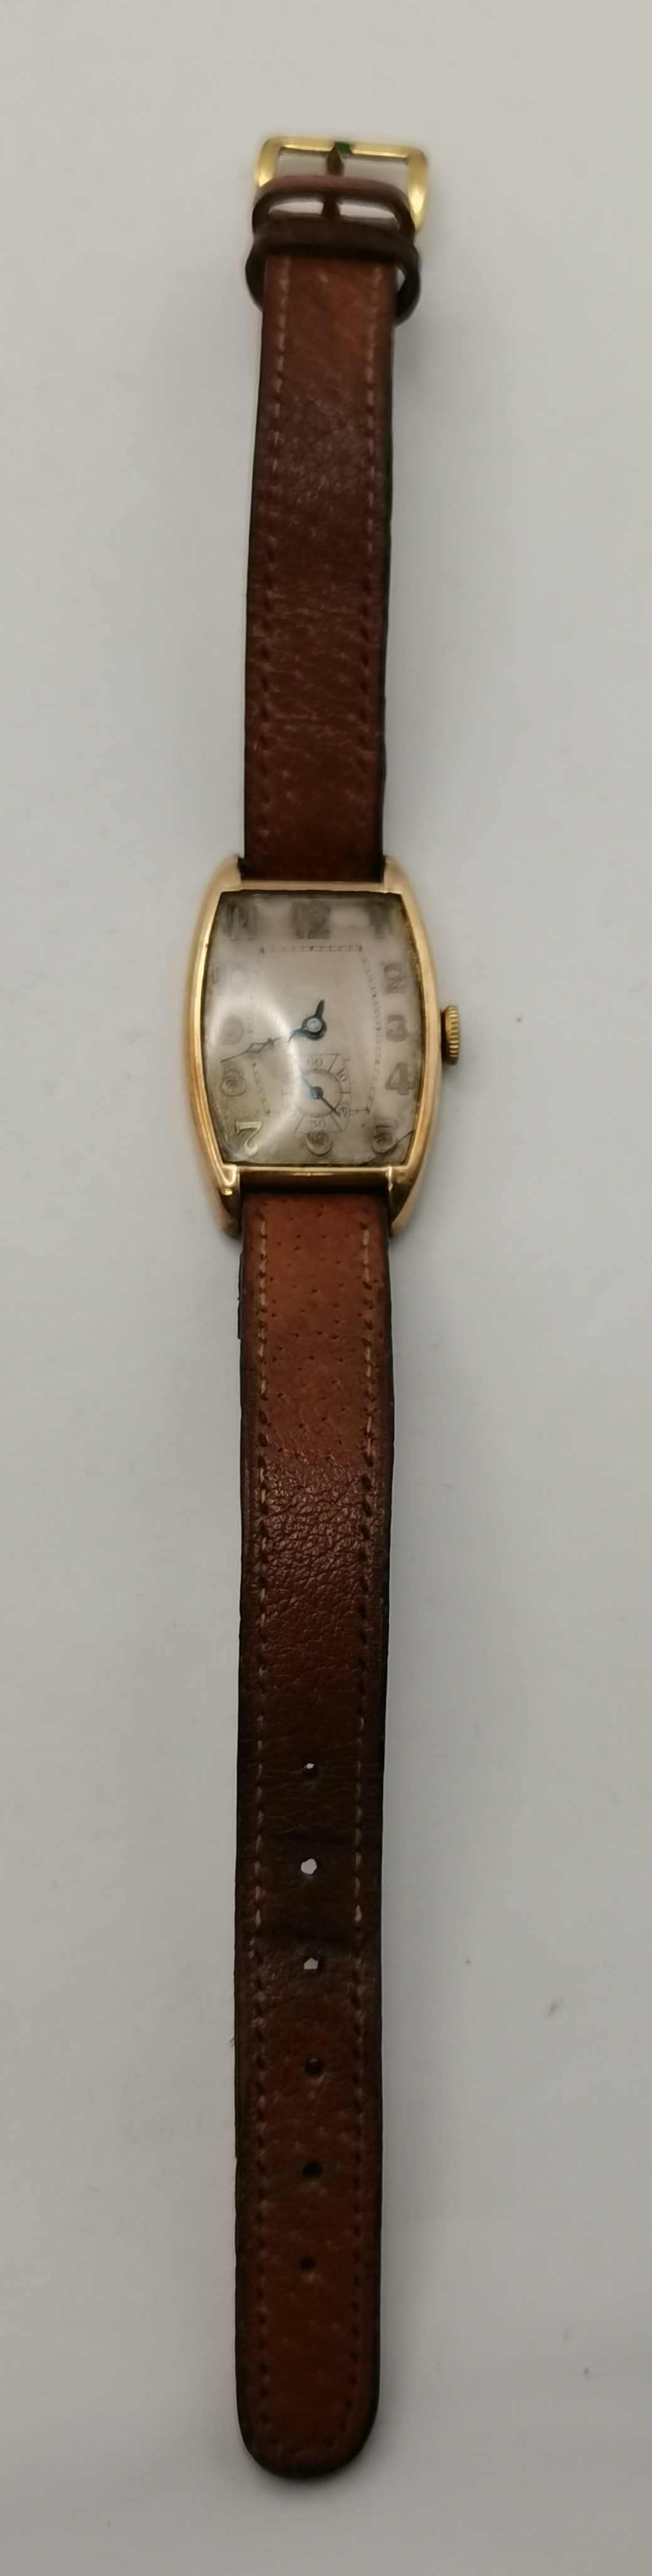 9ct Gold vintage Gents wrist Watch